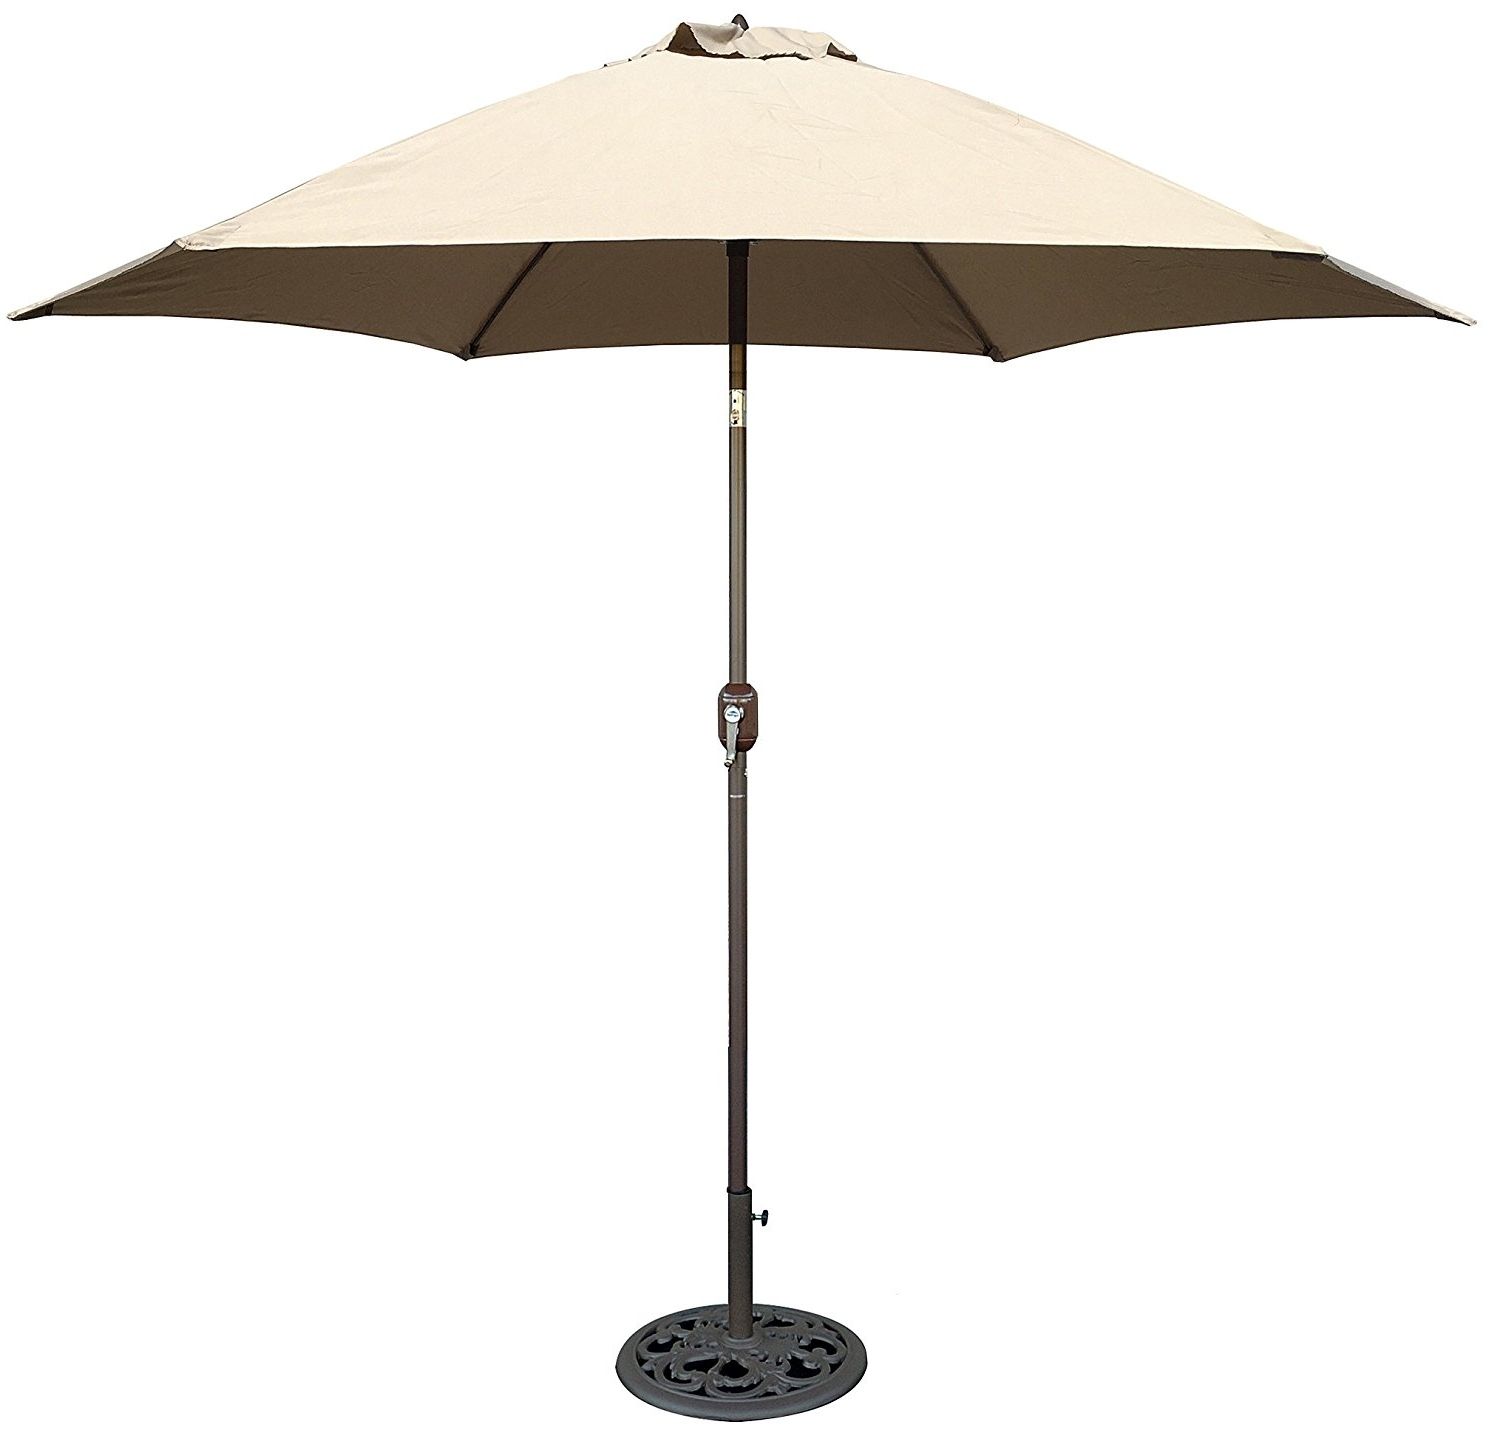 Patio Umbrellas Costco New Furniture Patio Sun Shades Costco Outdoor Regarding Latest Costco Patio Umbrellas (View 15 of 20)